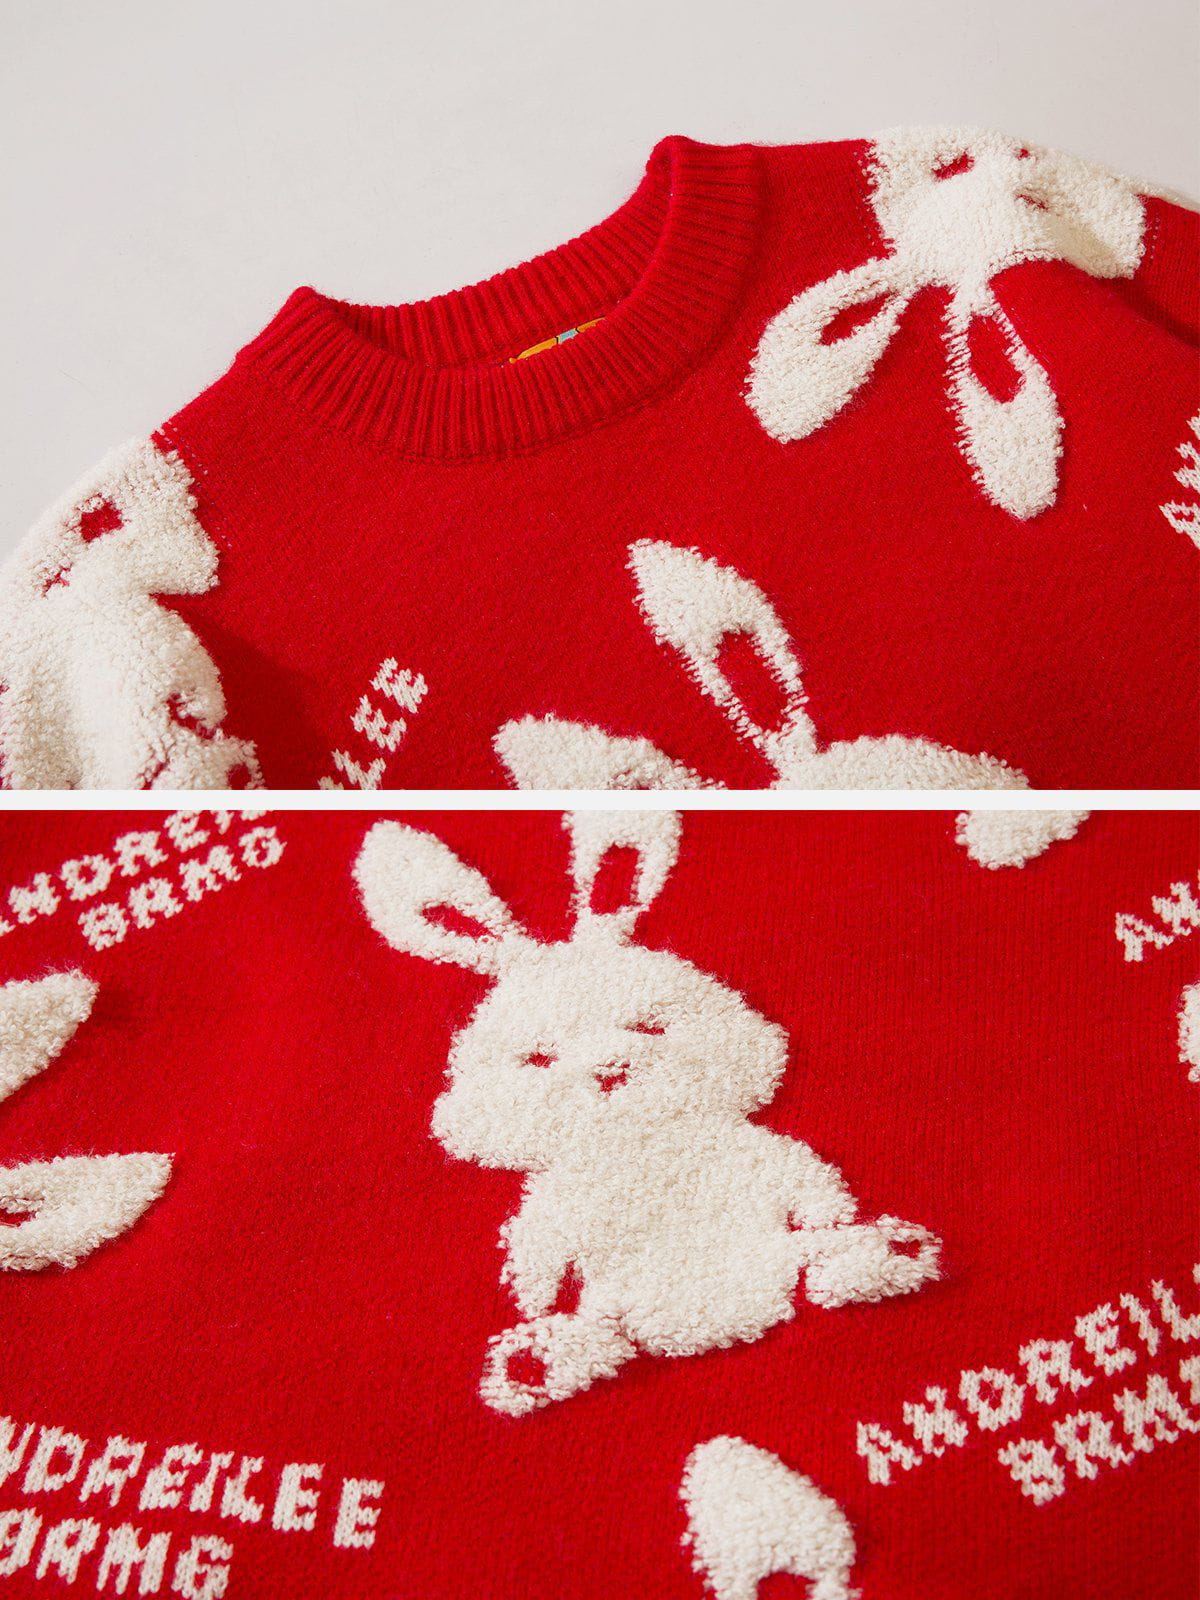 Eprezzy® - Flocked Rabbit Jacquard Sweater Streetwear Fashion - eprezzy.com